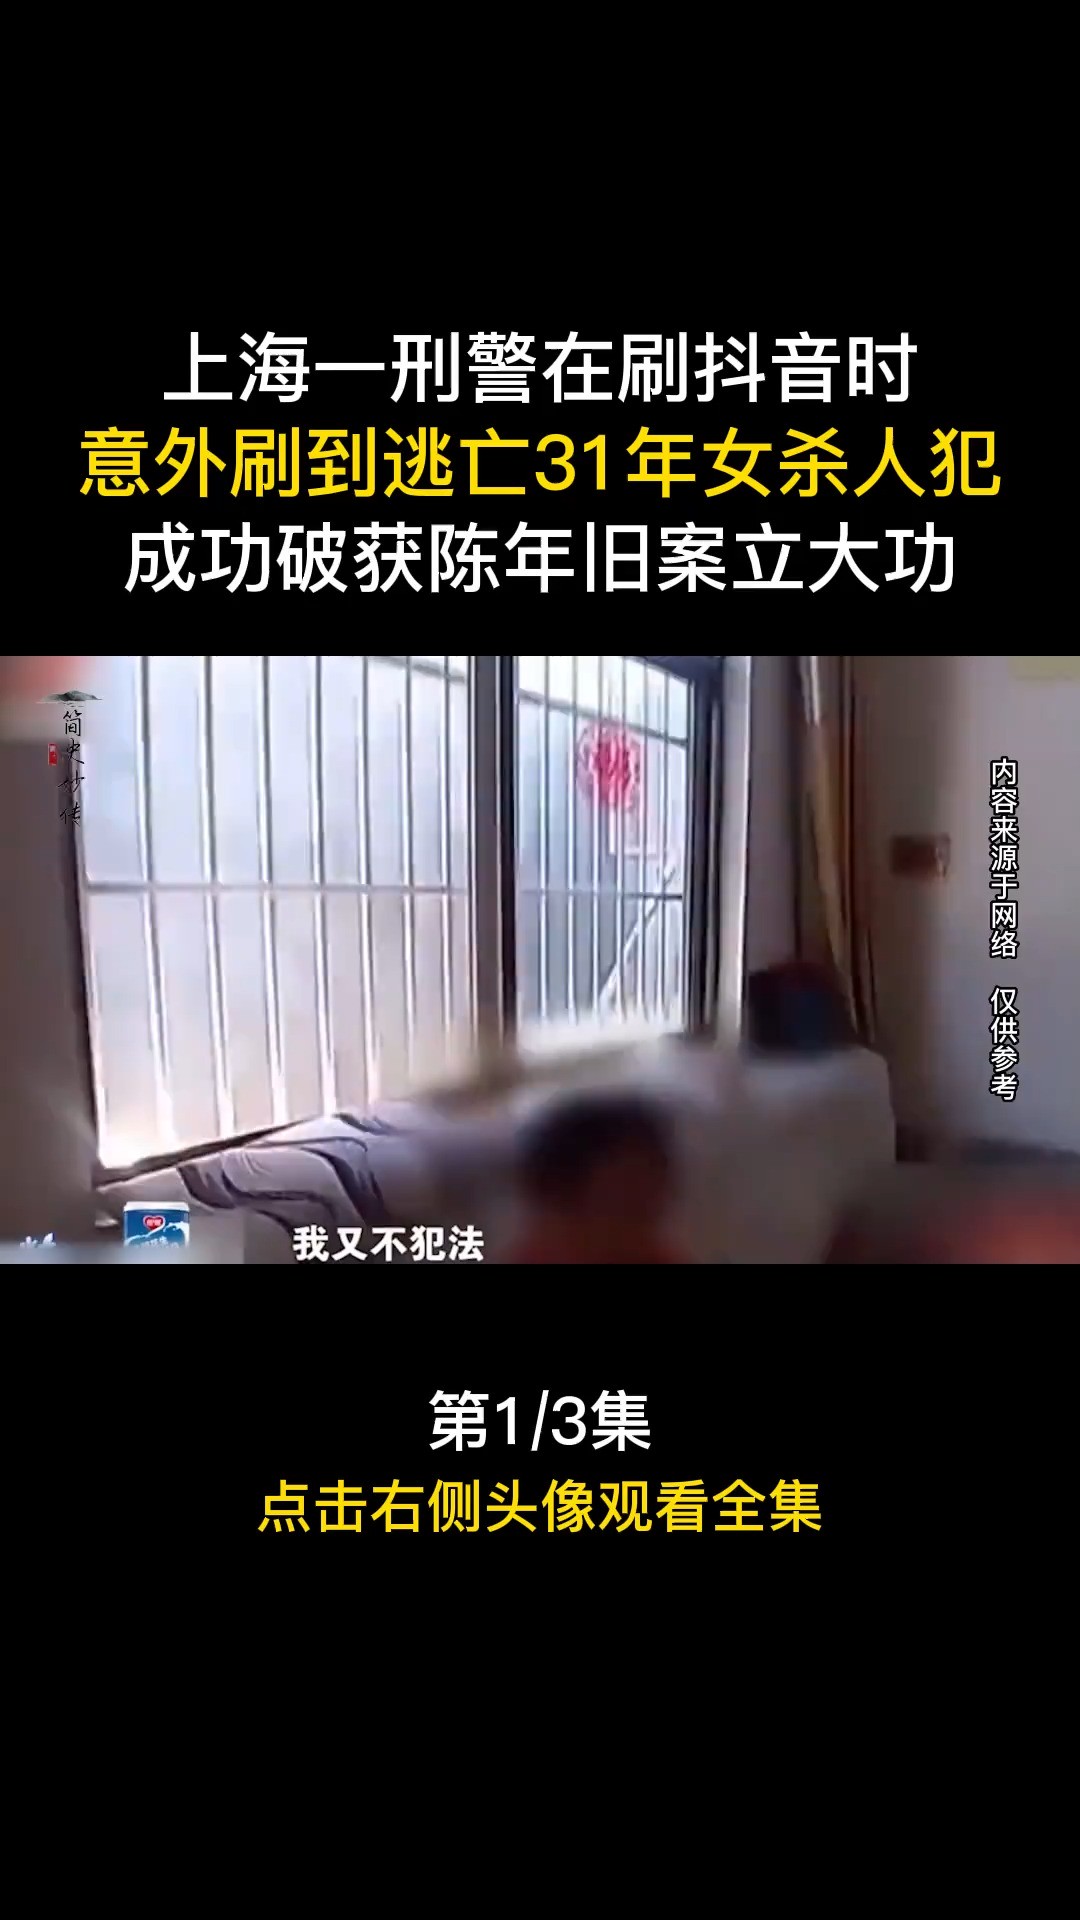 上海一刑警在刷时，意外刷到逃亡31年女杀人犯，成功破获陈年旧案立大功#社会百态#案件#真实事件 (1)

